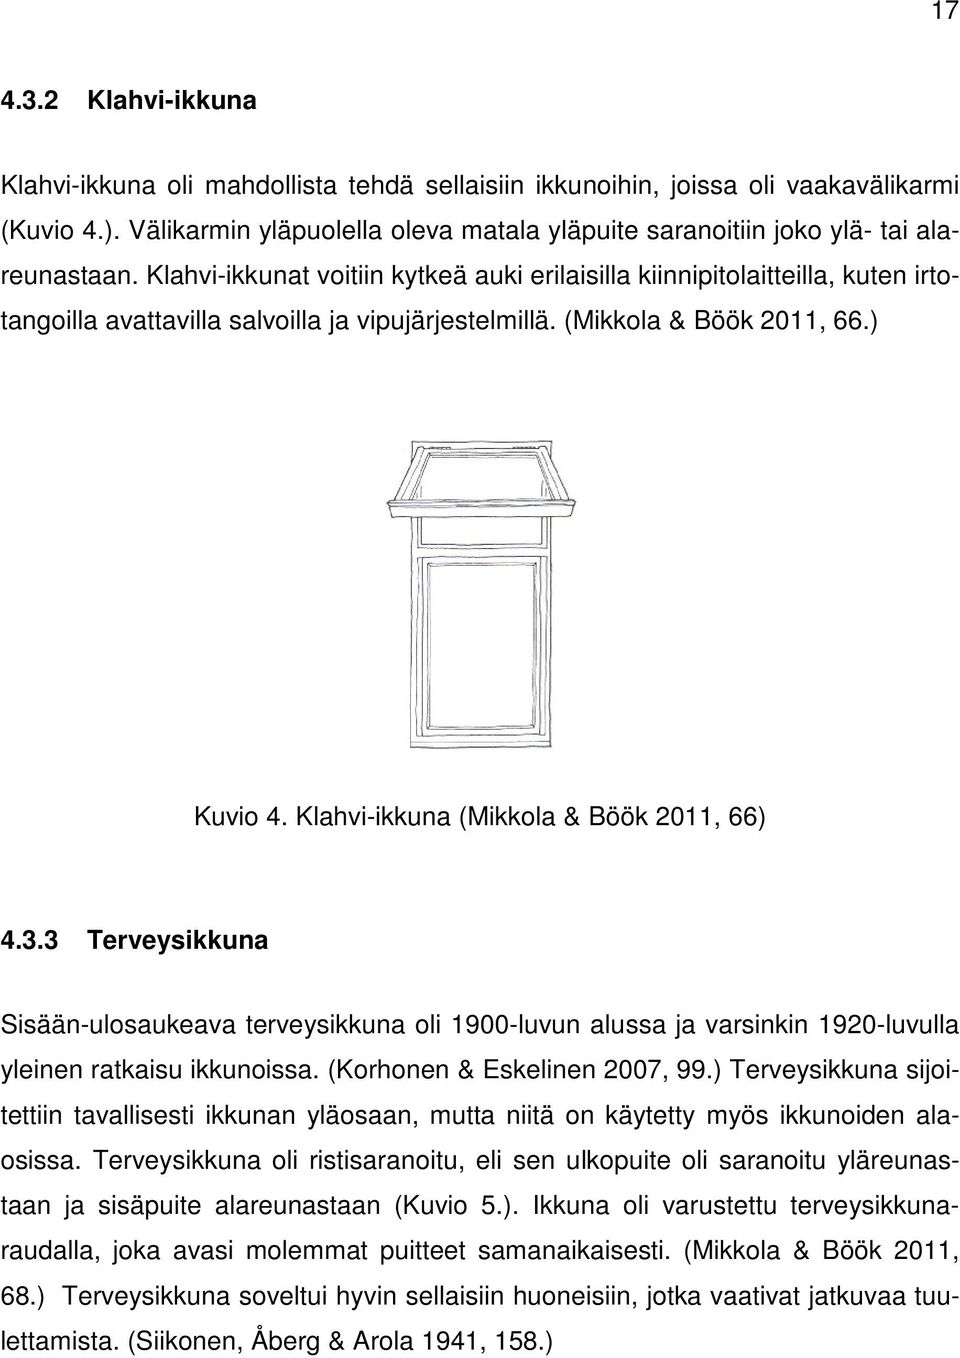 Klahvi-ikkunat voitiin kytkeä auki erilaisilla kiinnipitolaitteilla, kuten irtotangoilla avattavilla salvoilla ja vipujärjestelmillä. (Mikkola & Böök 2011, 66.) Kuvio 4.